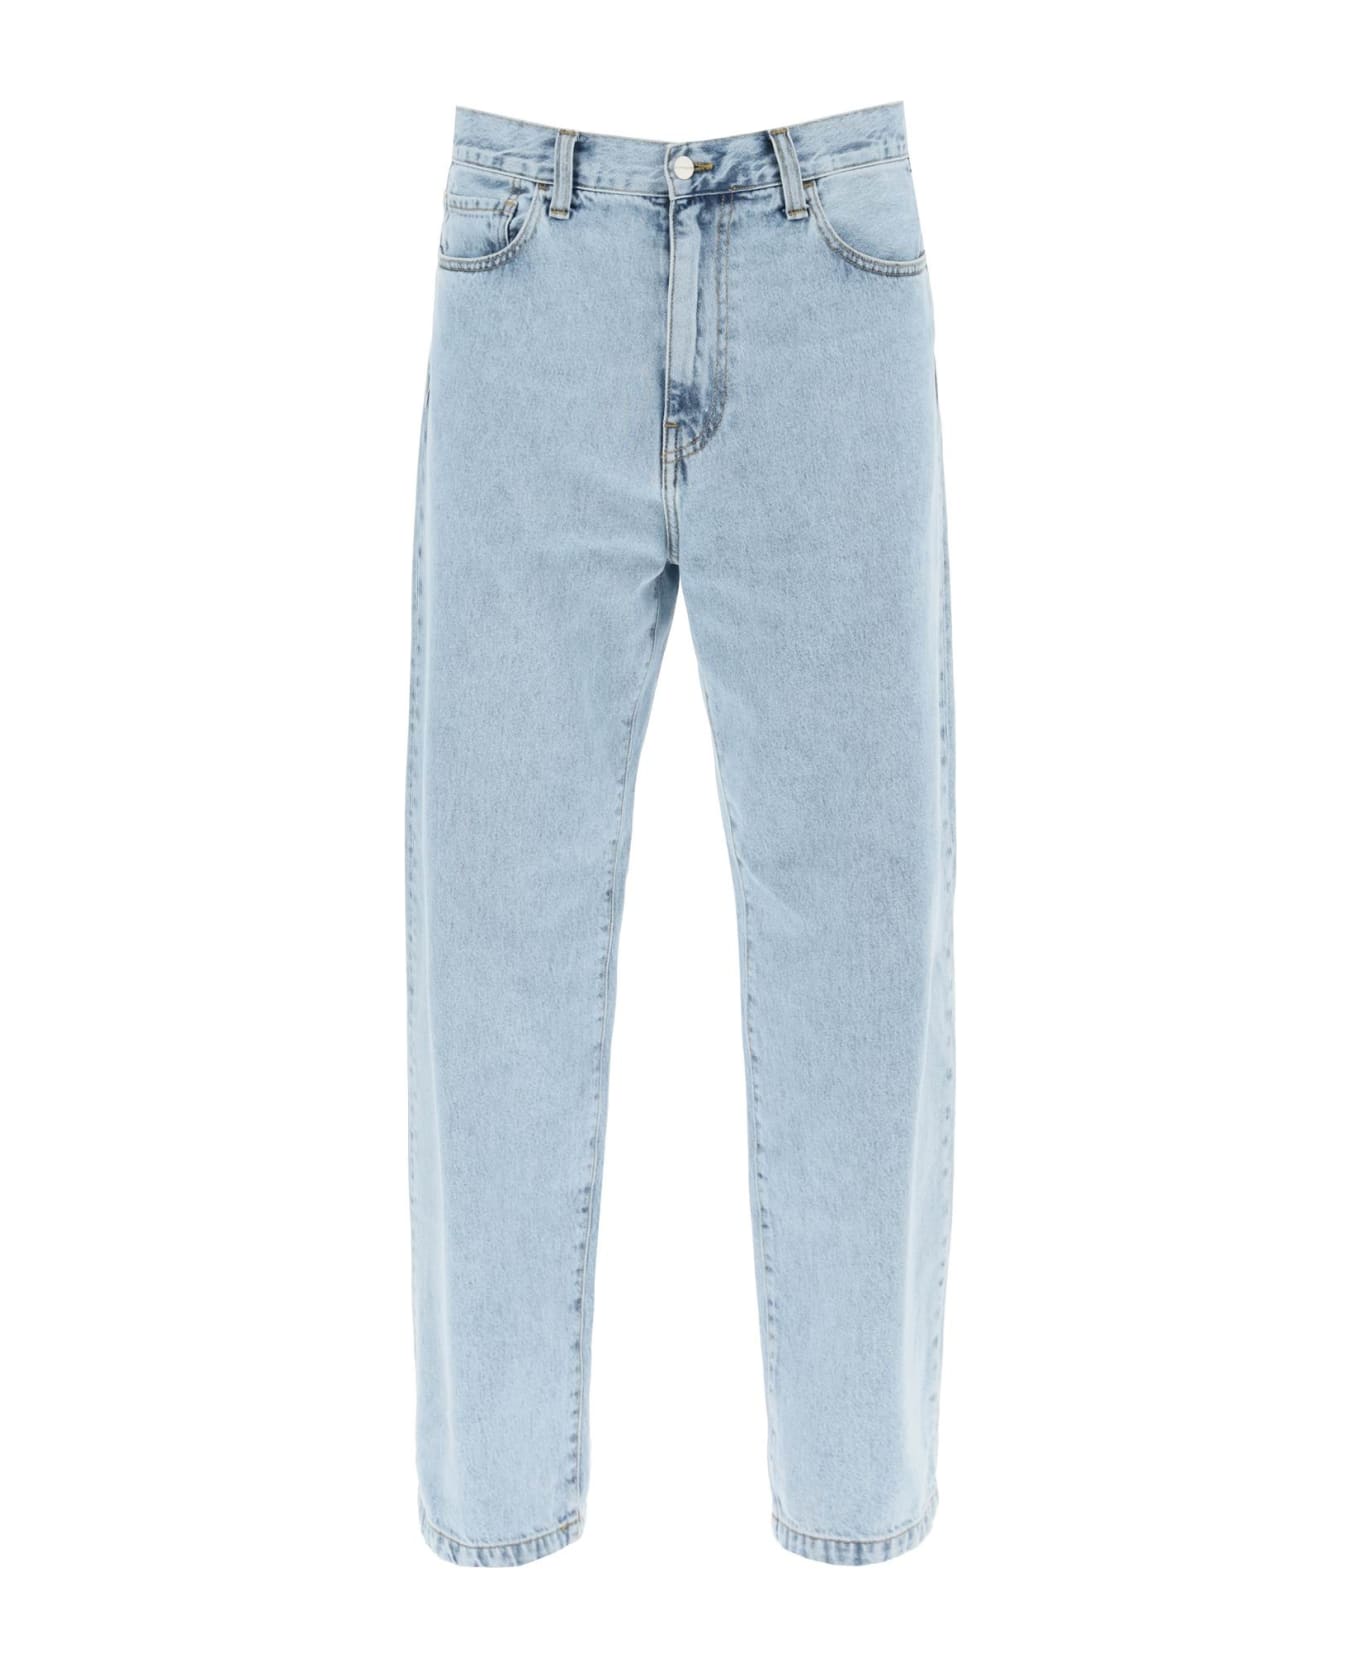 Carhartt Jeans In Cyan Denim - BLUE (Blue)